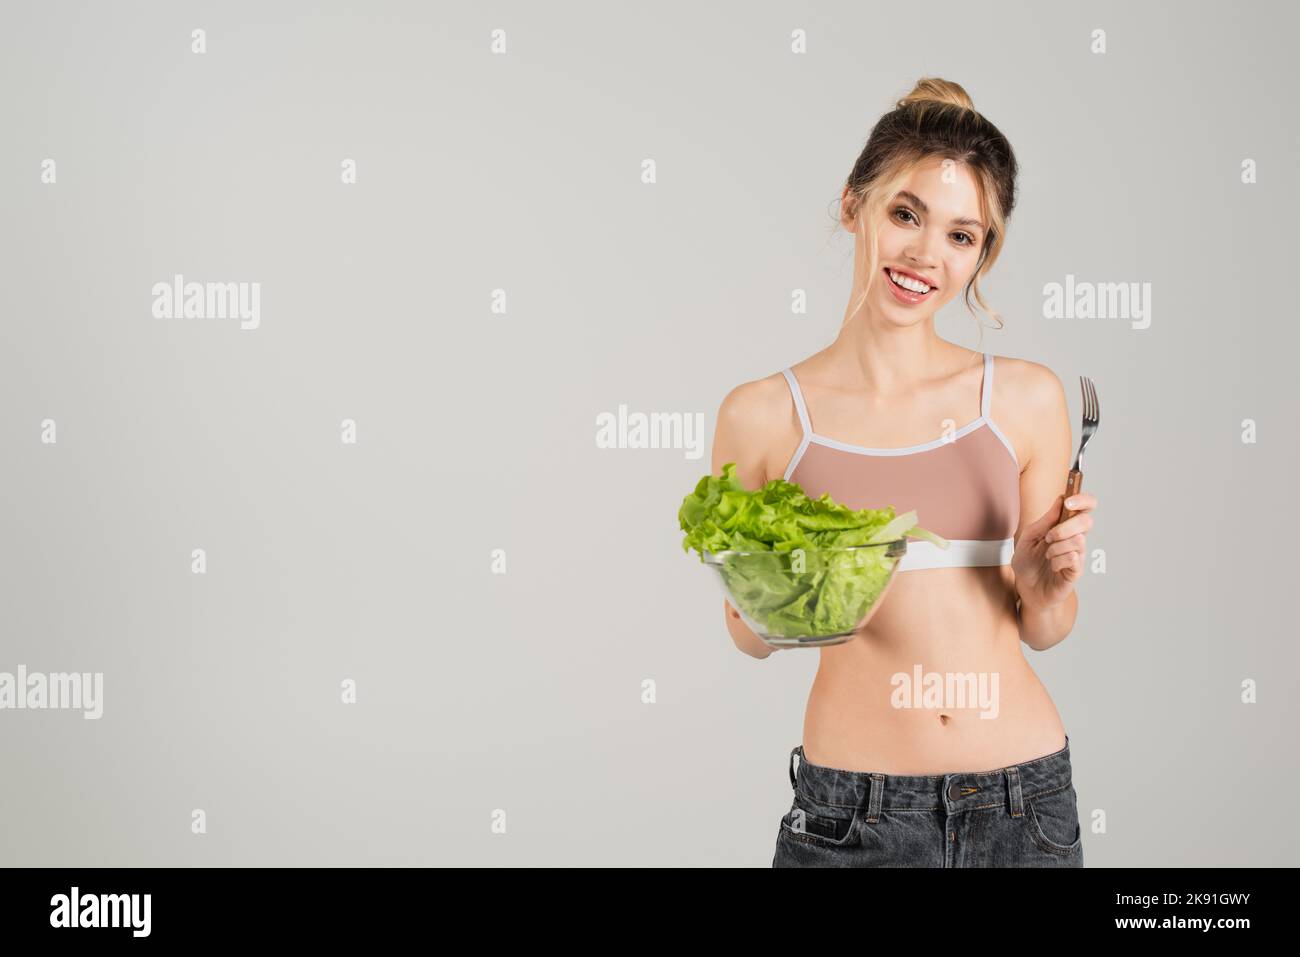 Junge Frau mit schlankem Körper, der Gabel und frischen Salat hält, während sie auf grau isoliert auf die Kamera lächelt Stockfoto